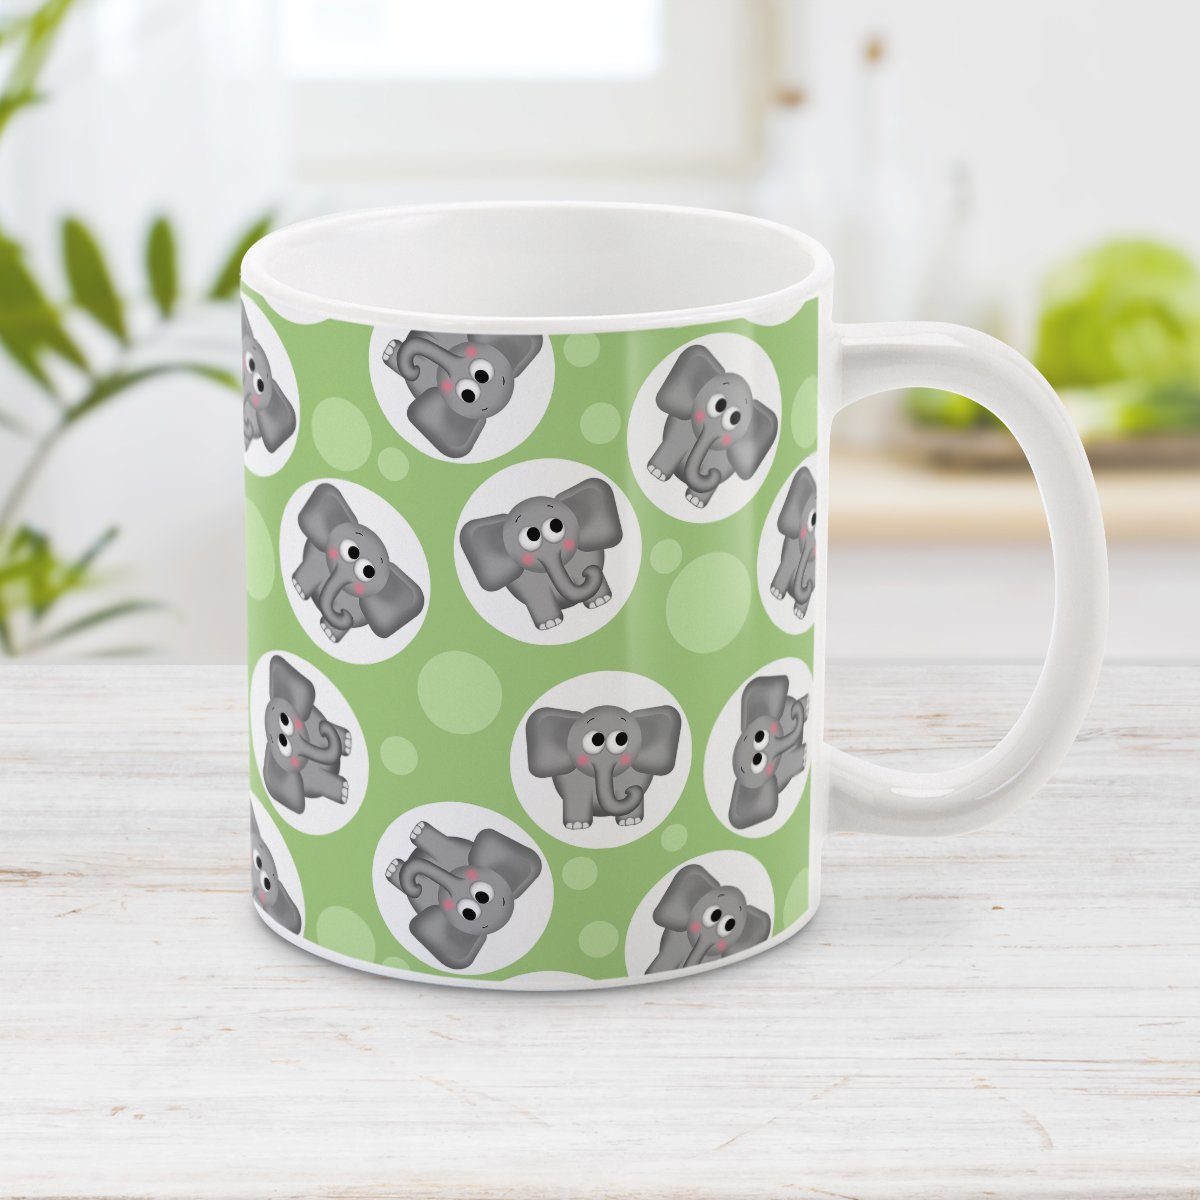 Cute Elephant Pattern Green Mug at Amy's Coffee Mugs